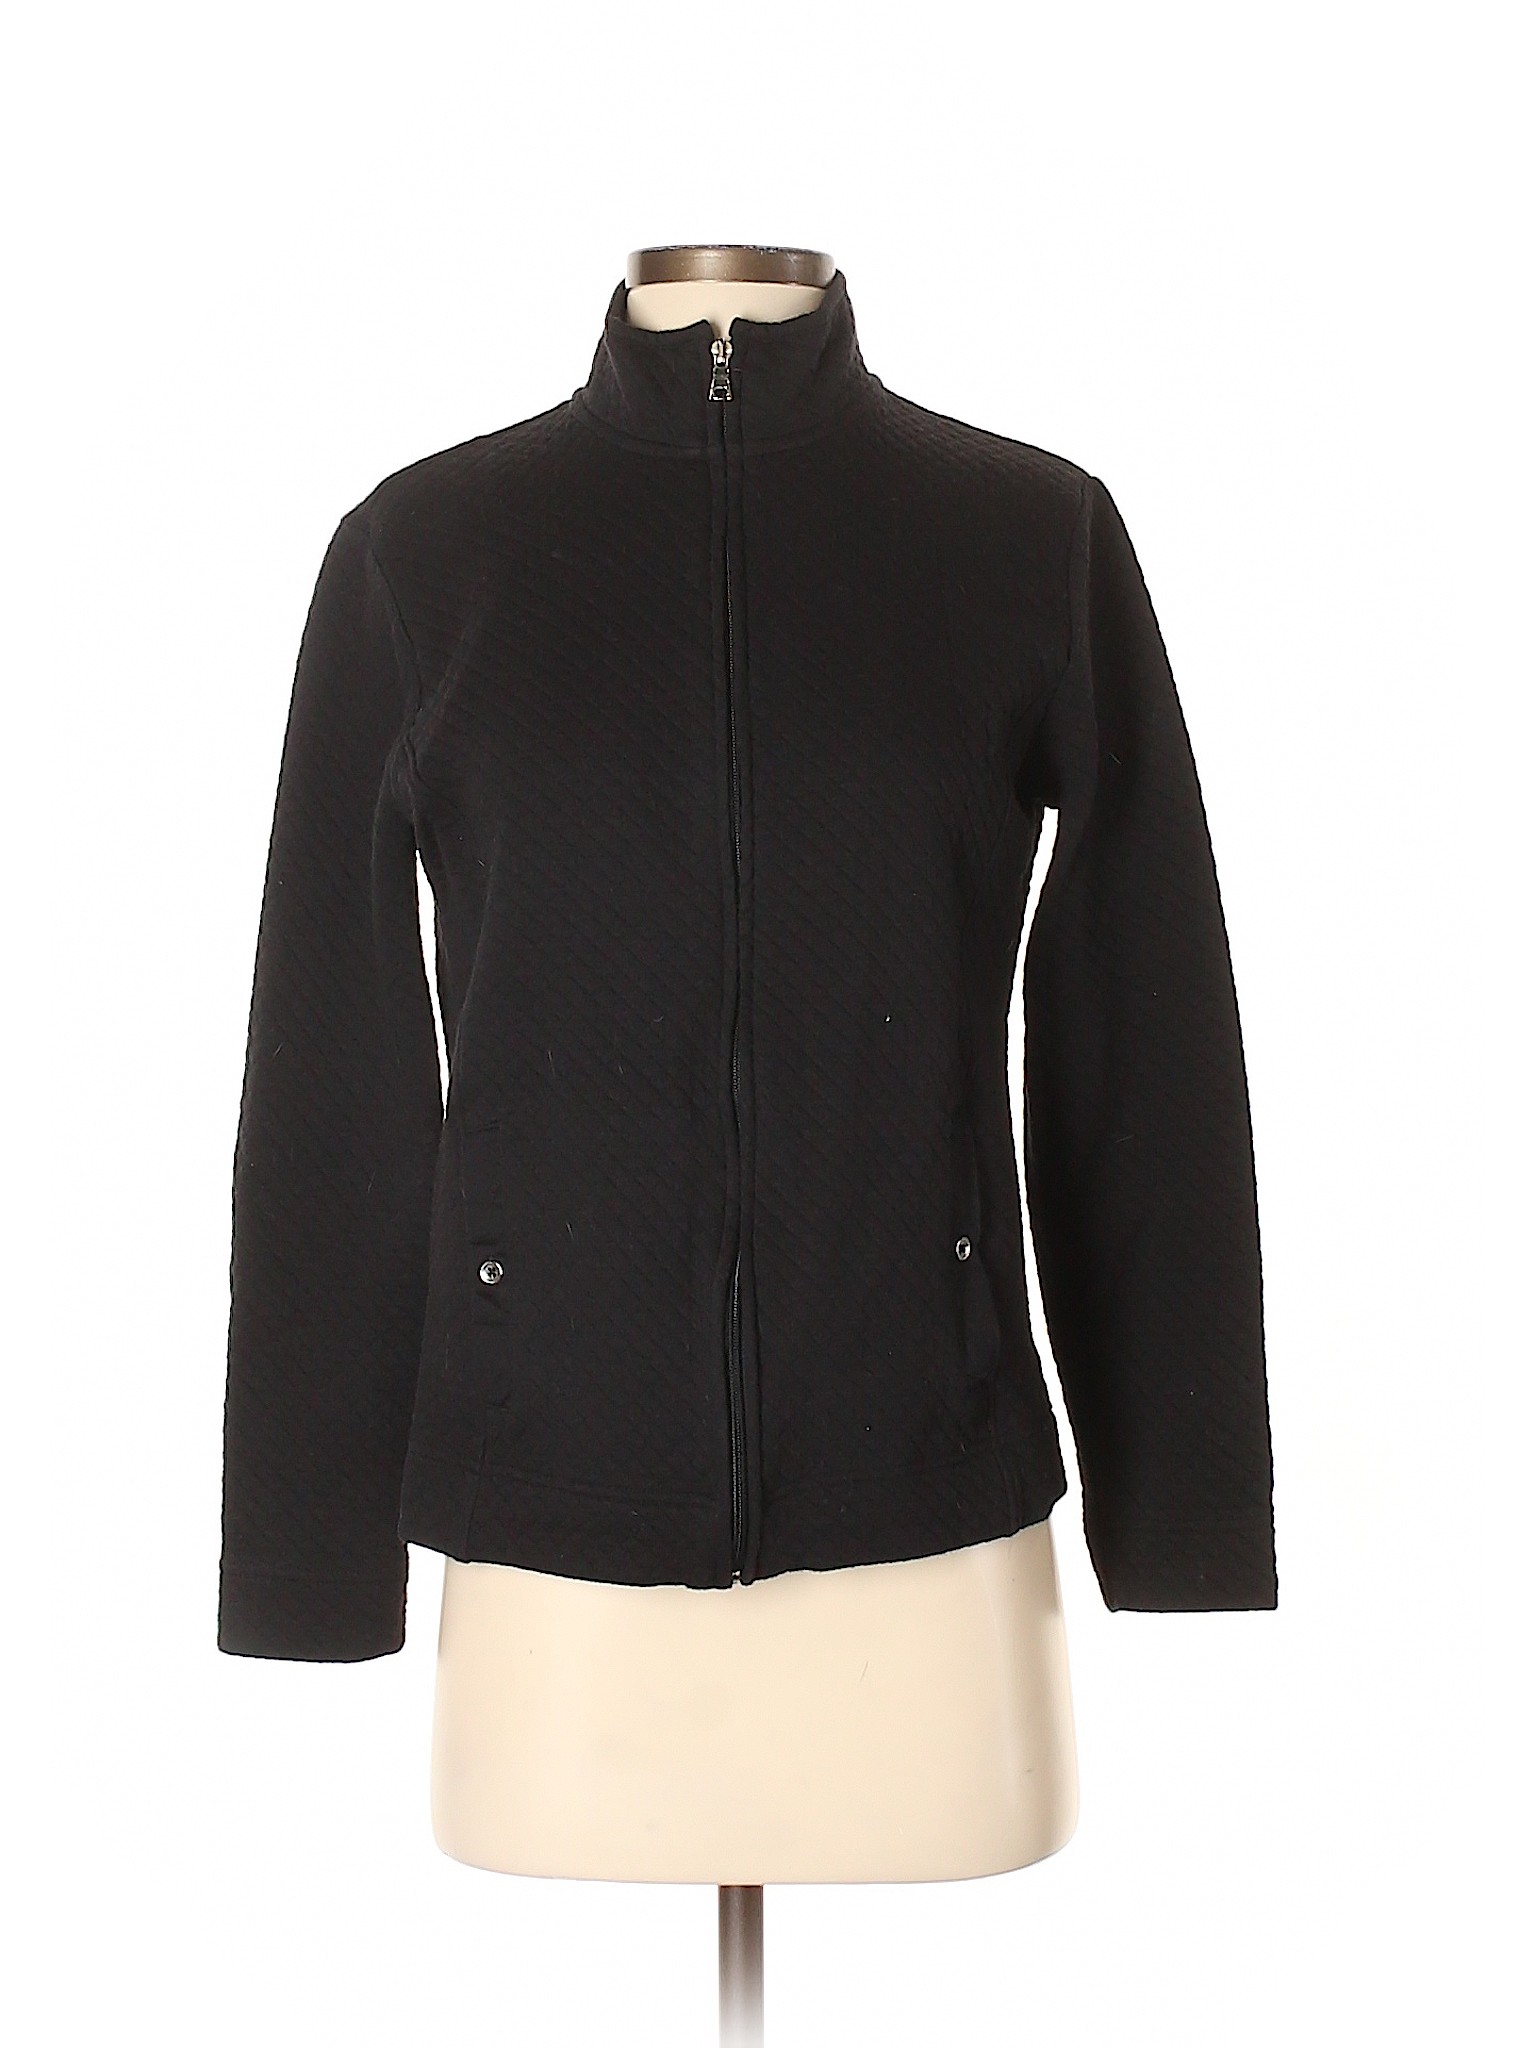 Croft & Barrow Women Black Jacket S | eBay